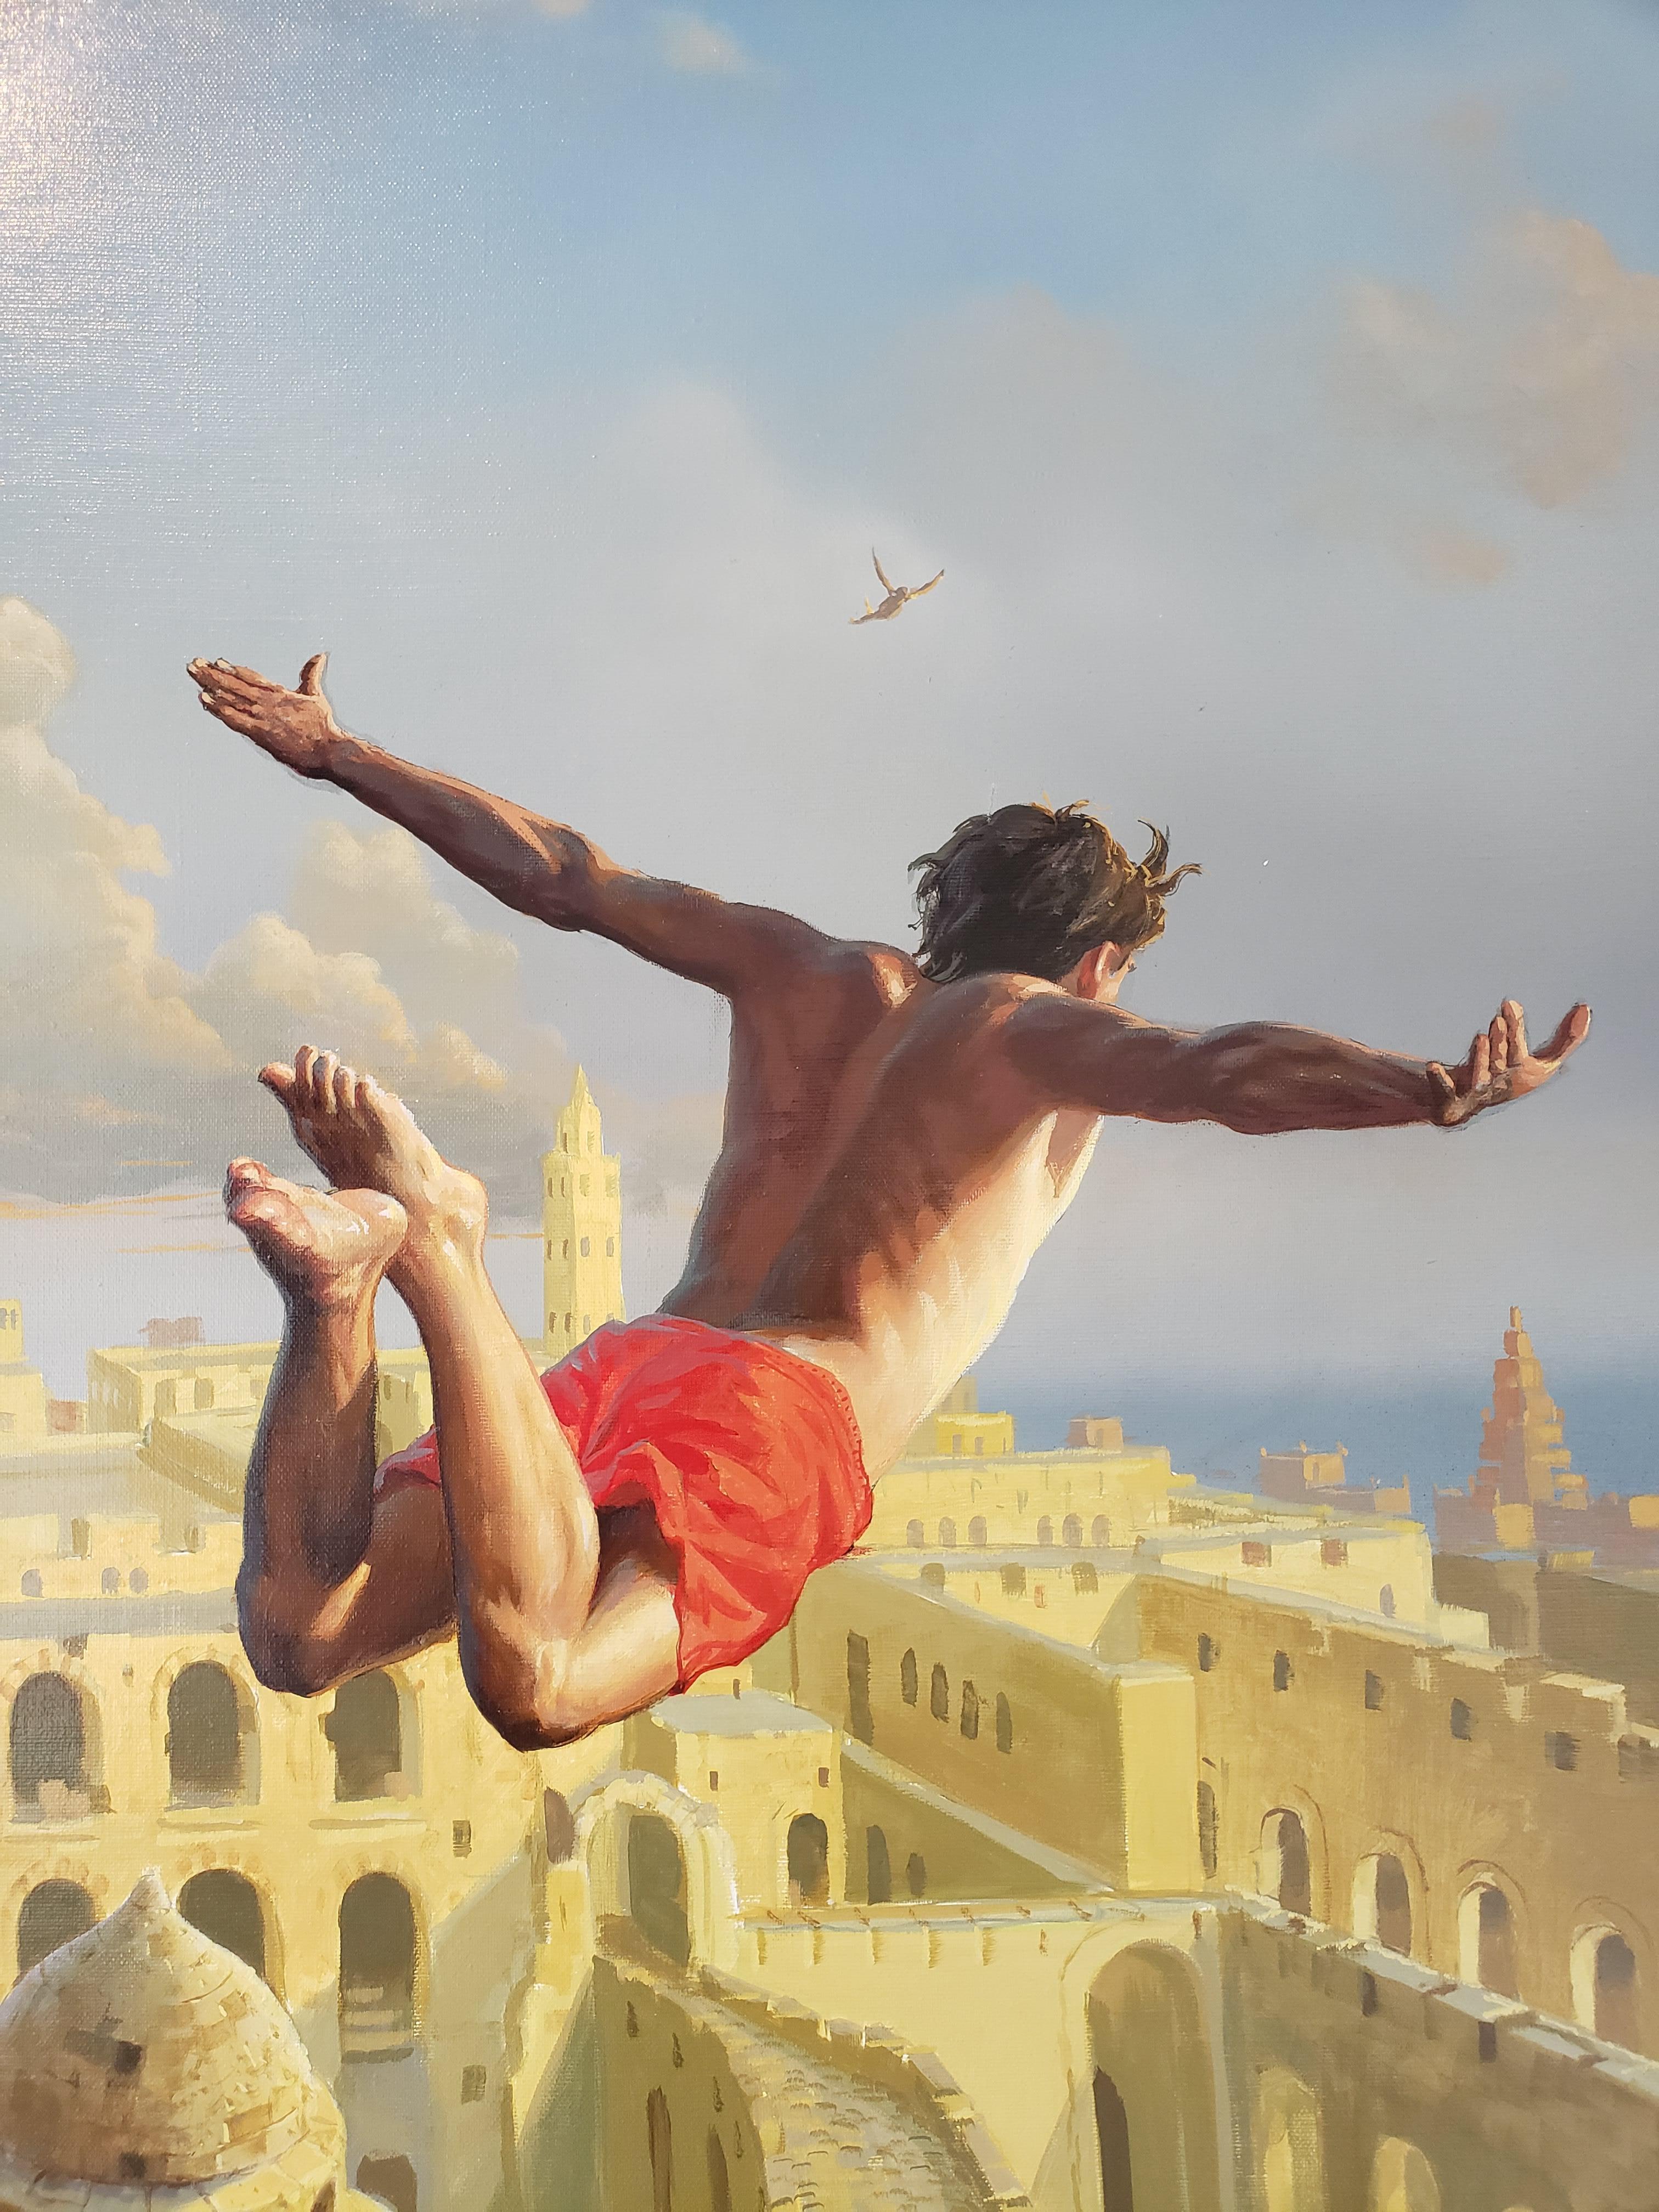 Flying in Dreams - Painting by Stanislav Plutenko